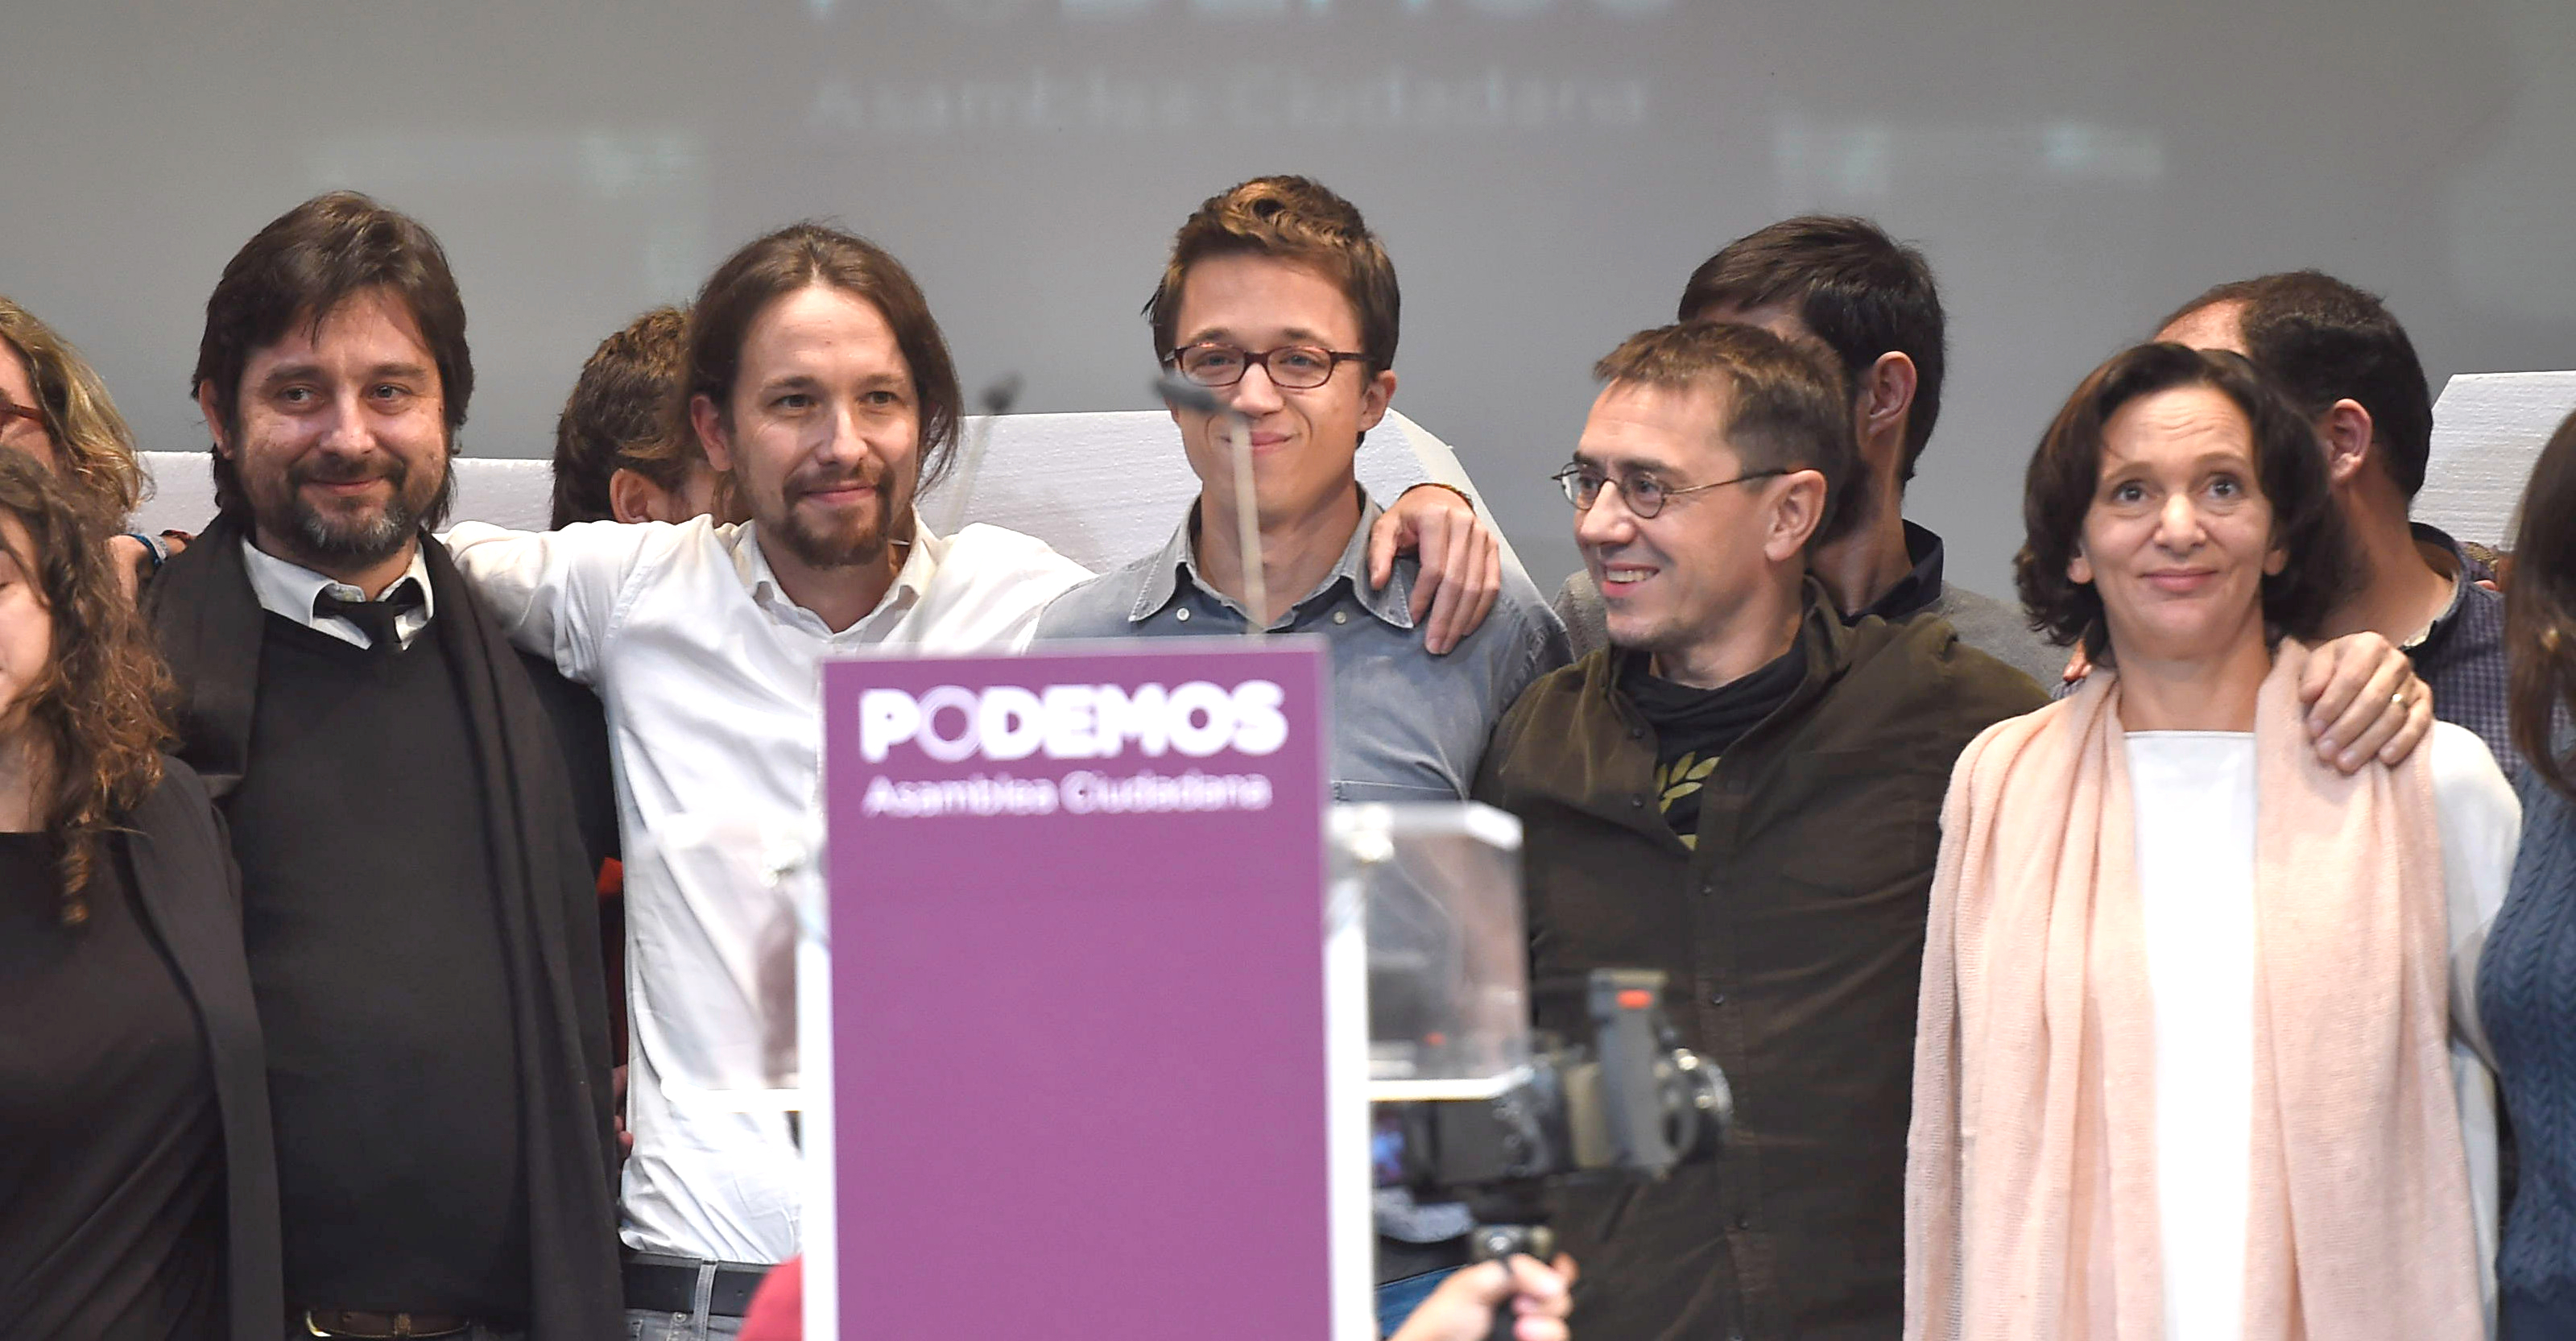 Proponemos actrices y actores para la serie sobre Podemos